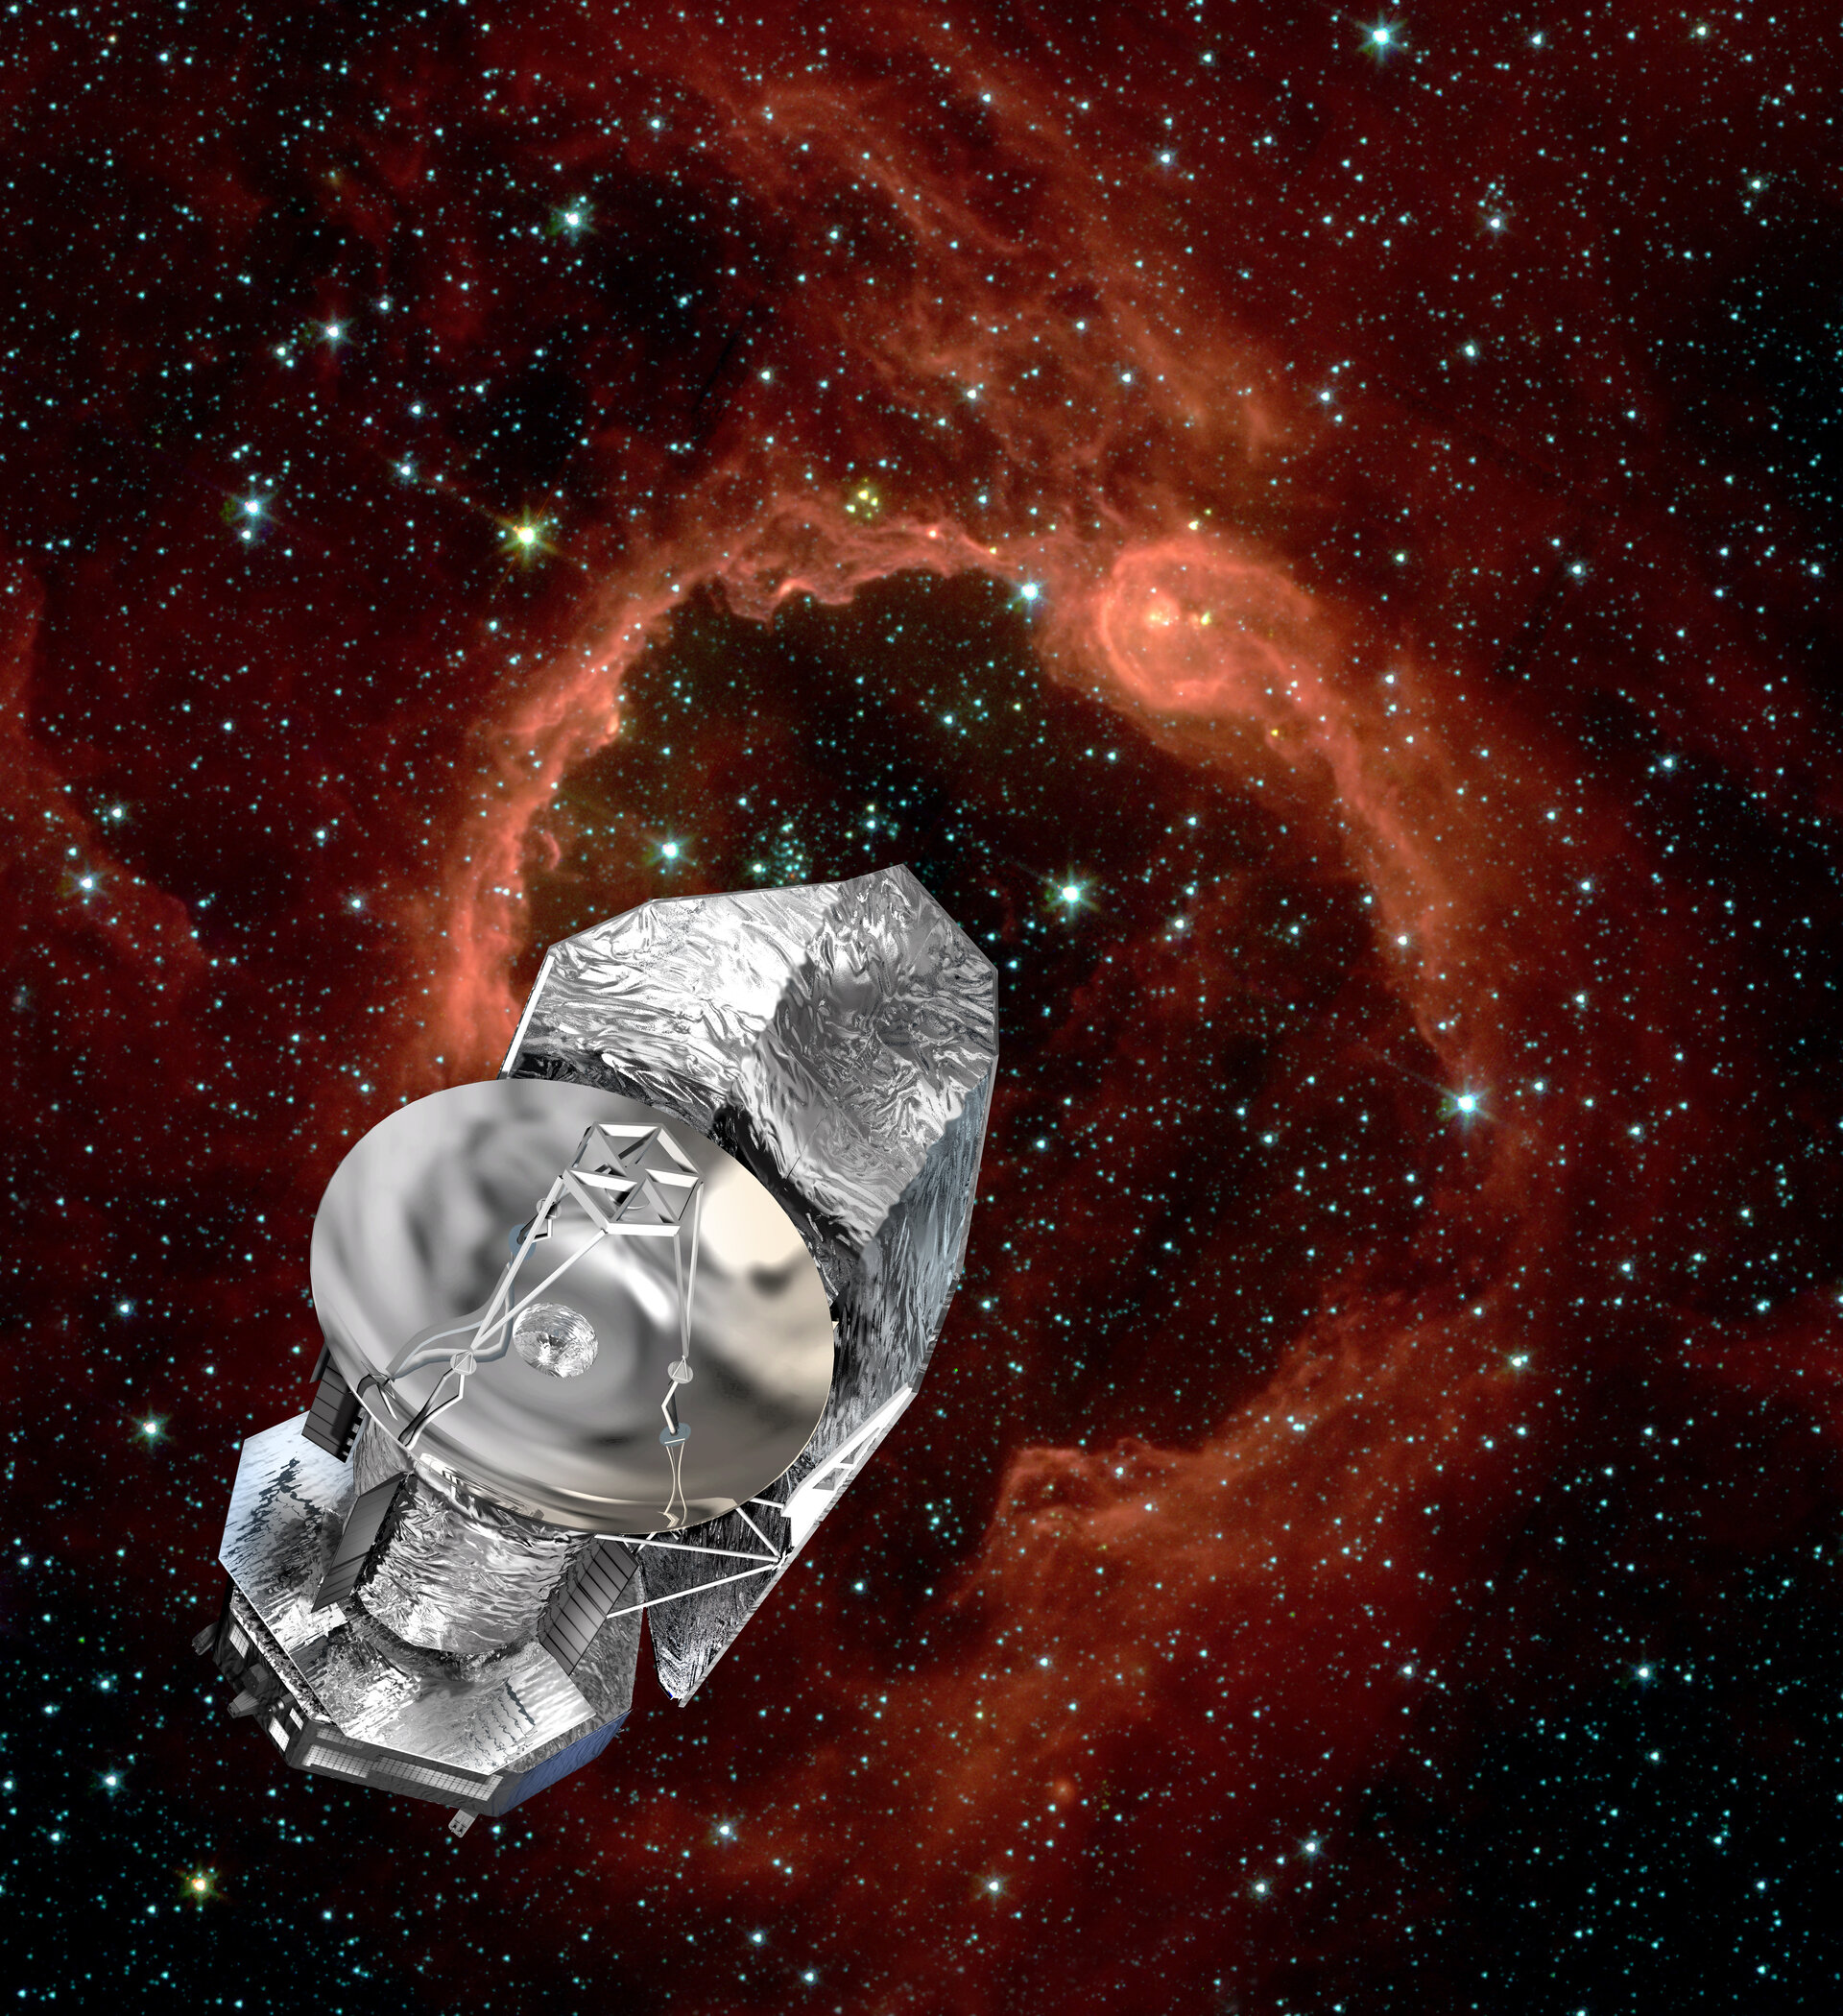 Artist impression of the Herschel spacecraft